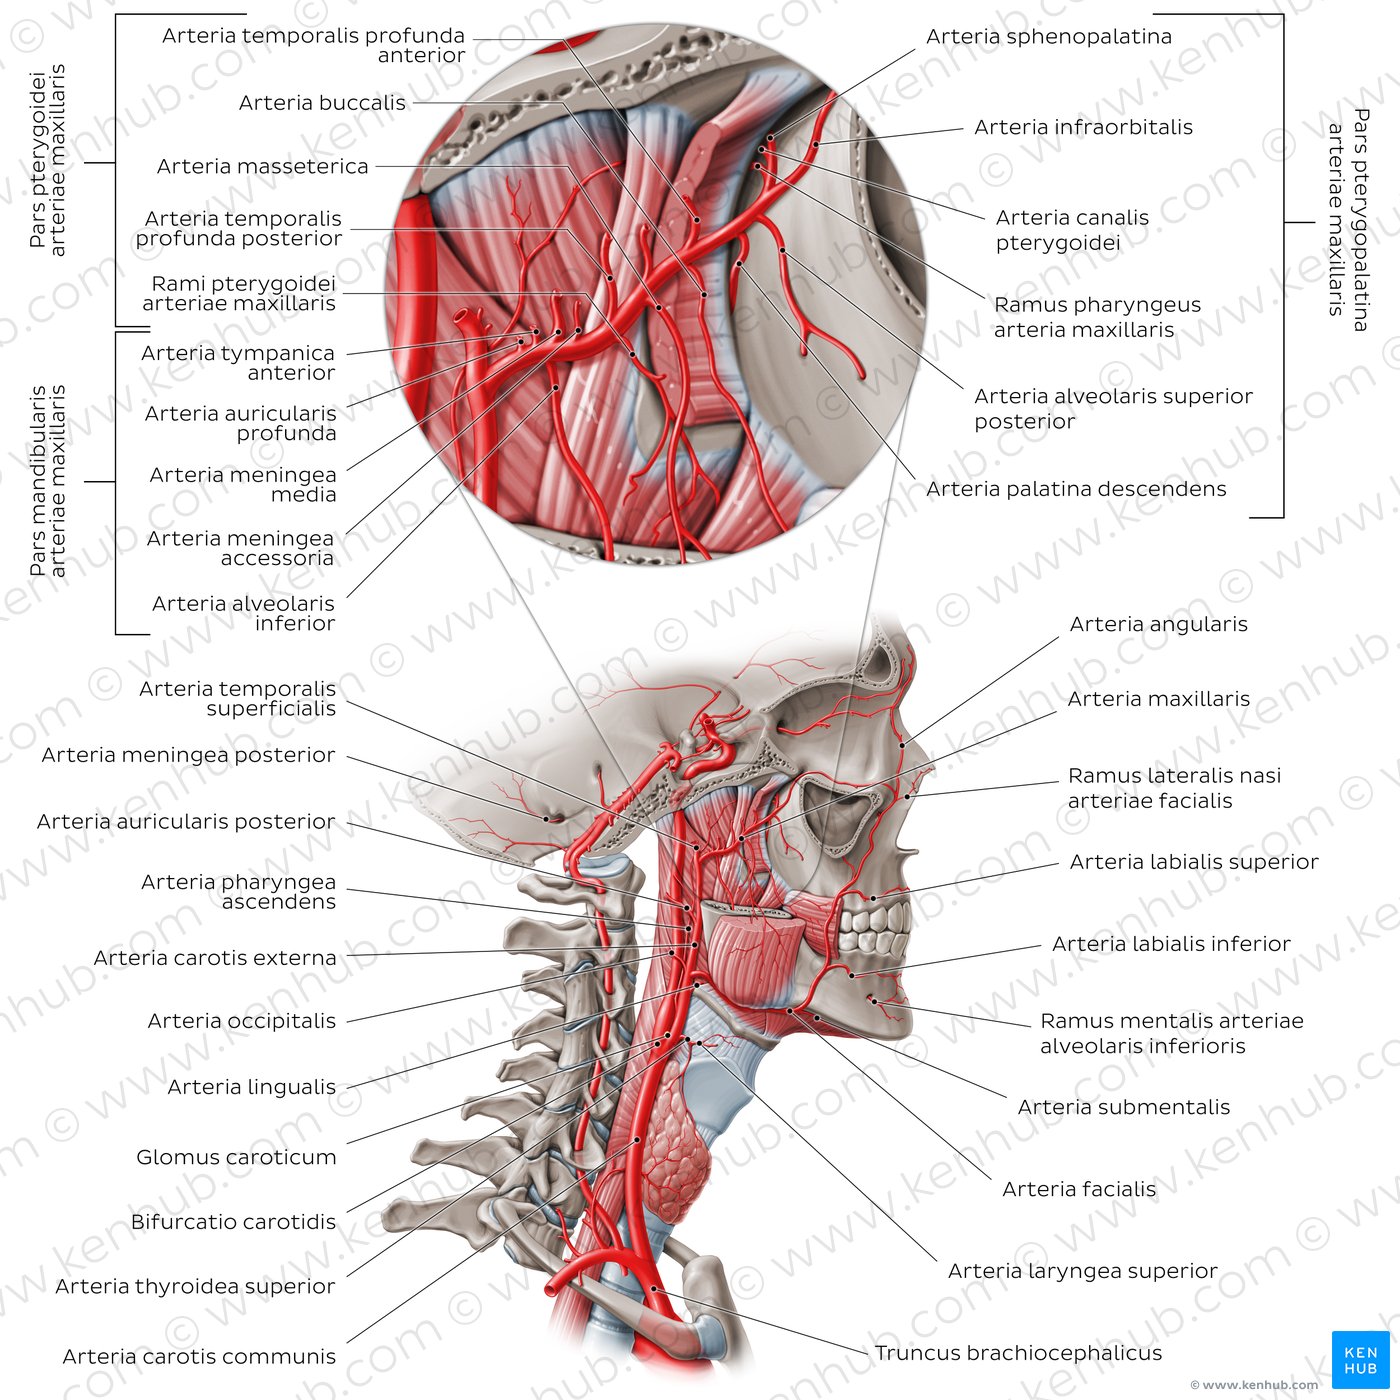 Arterien der Hals- und unteren Kopfregion - von lateral